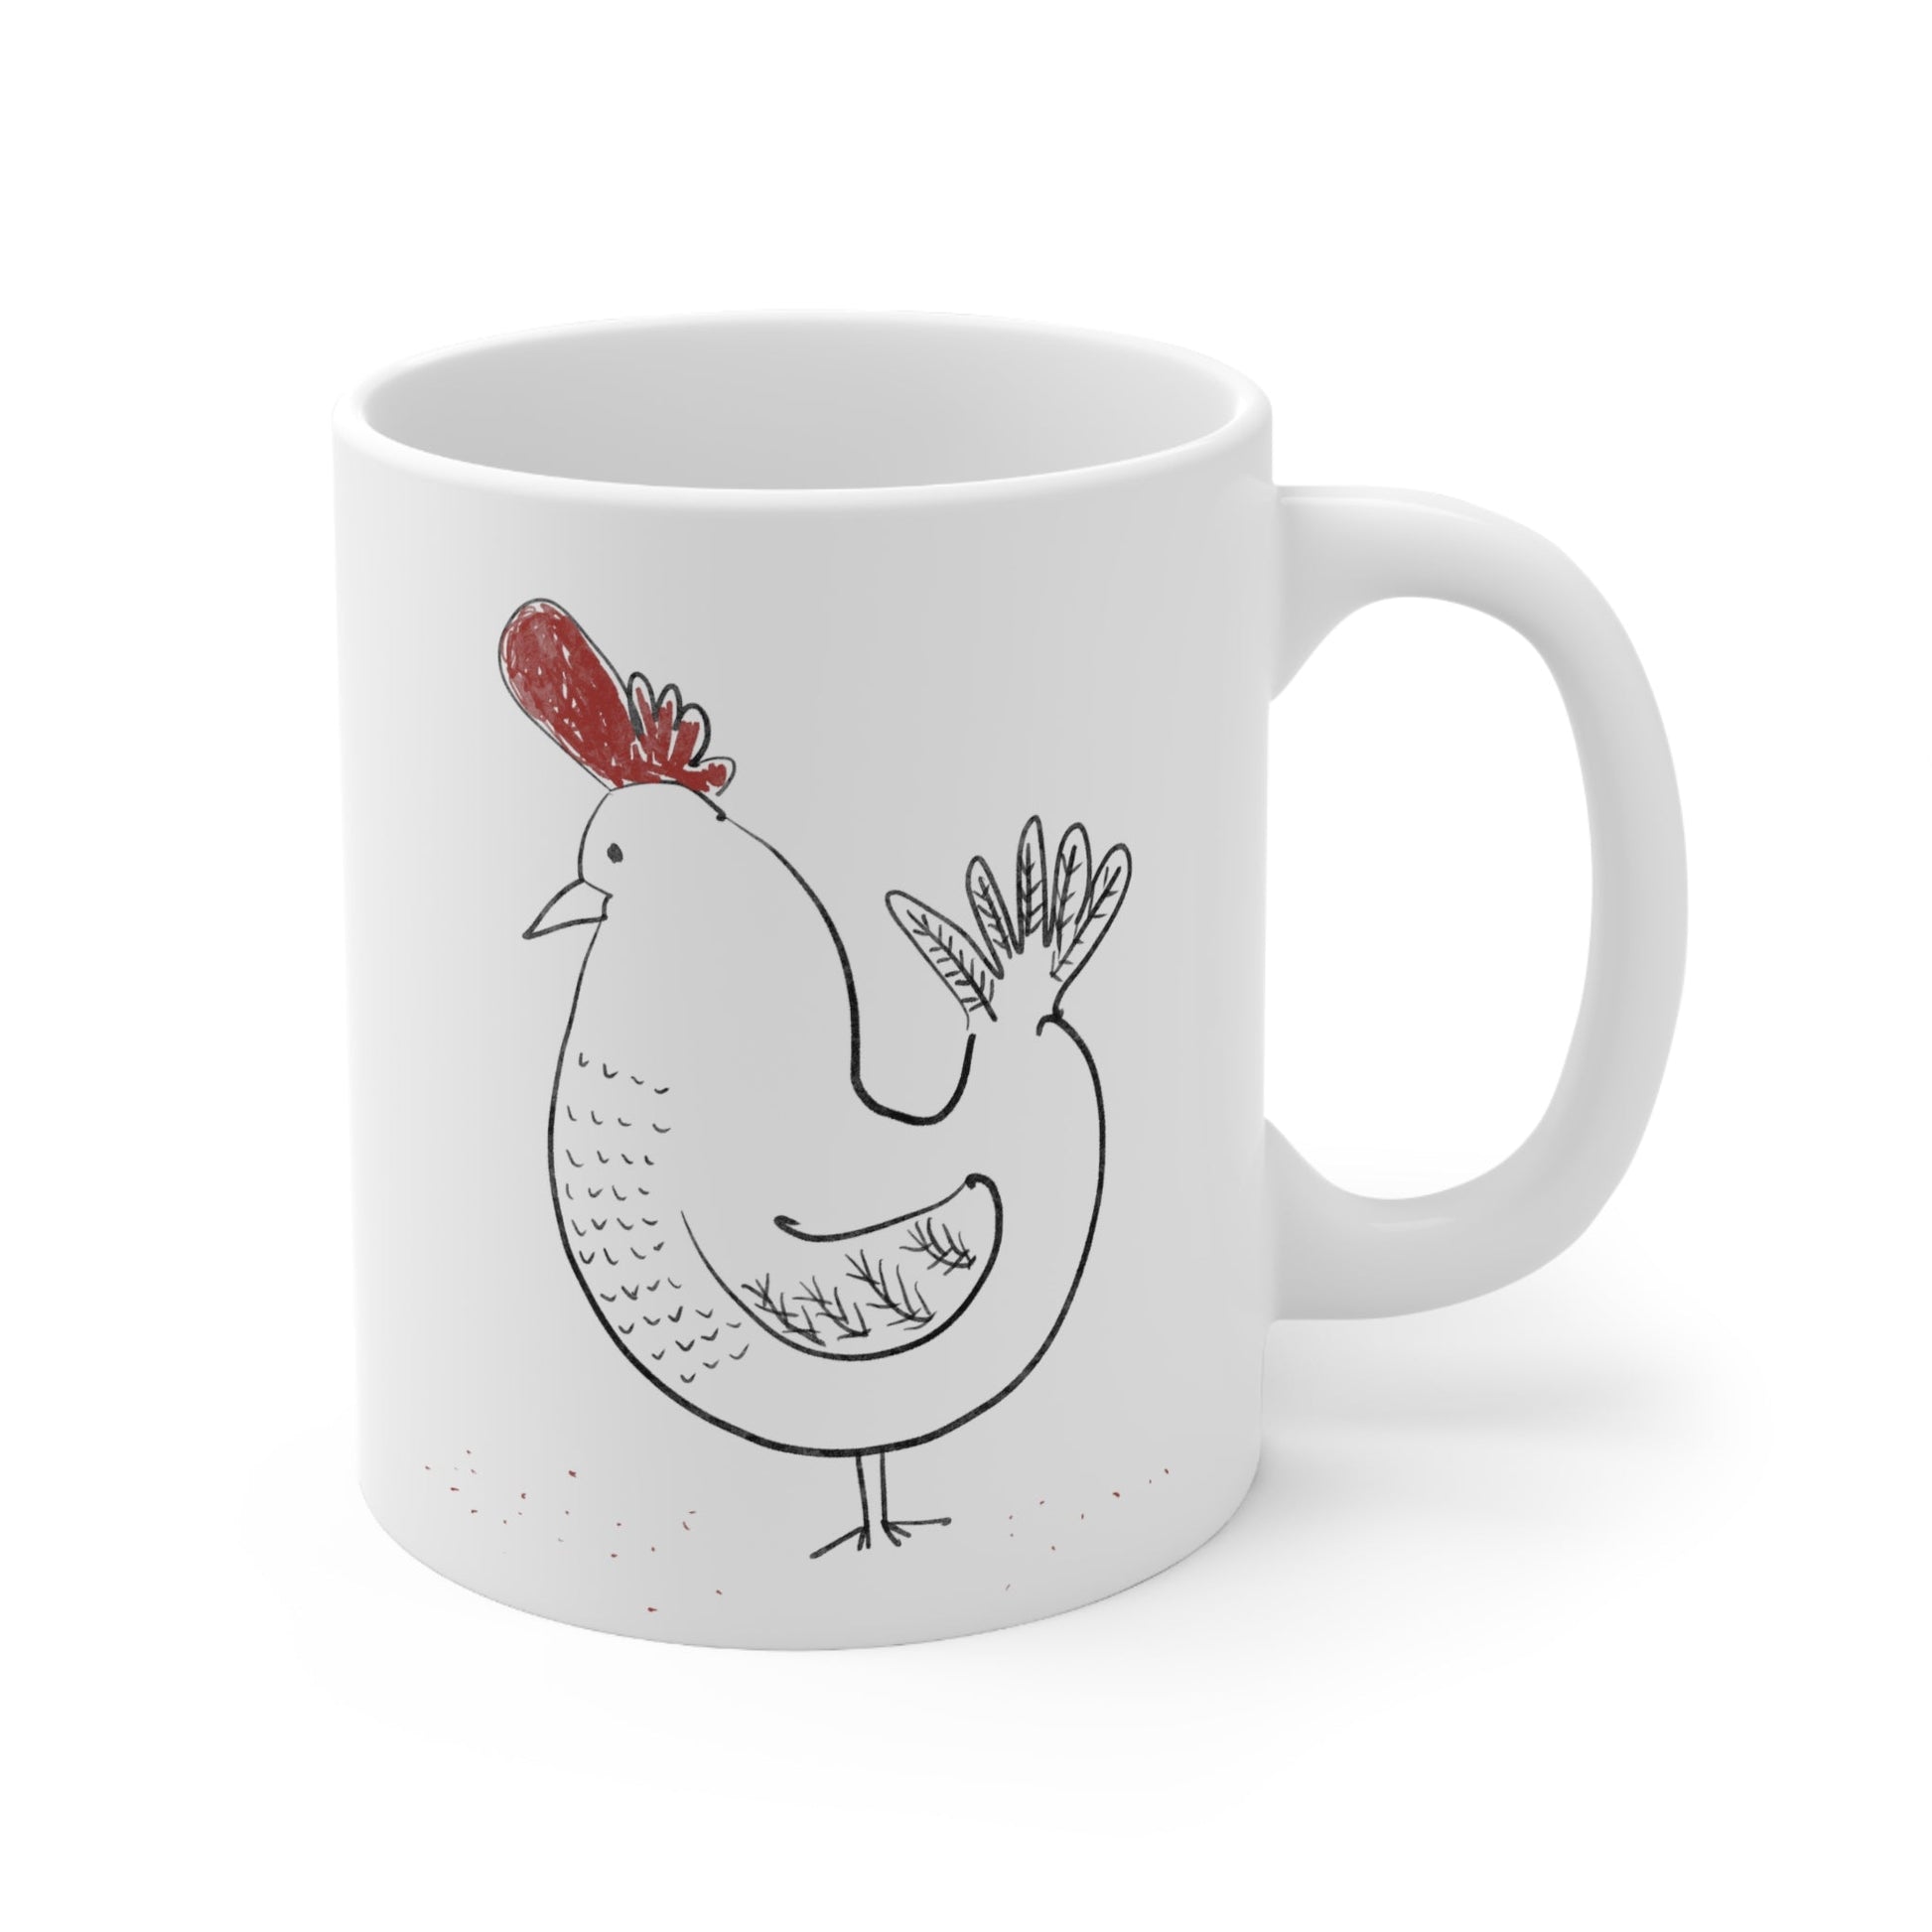 chicken mug - The muggin shop